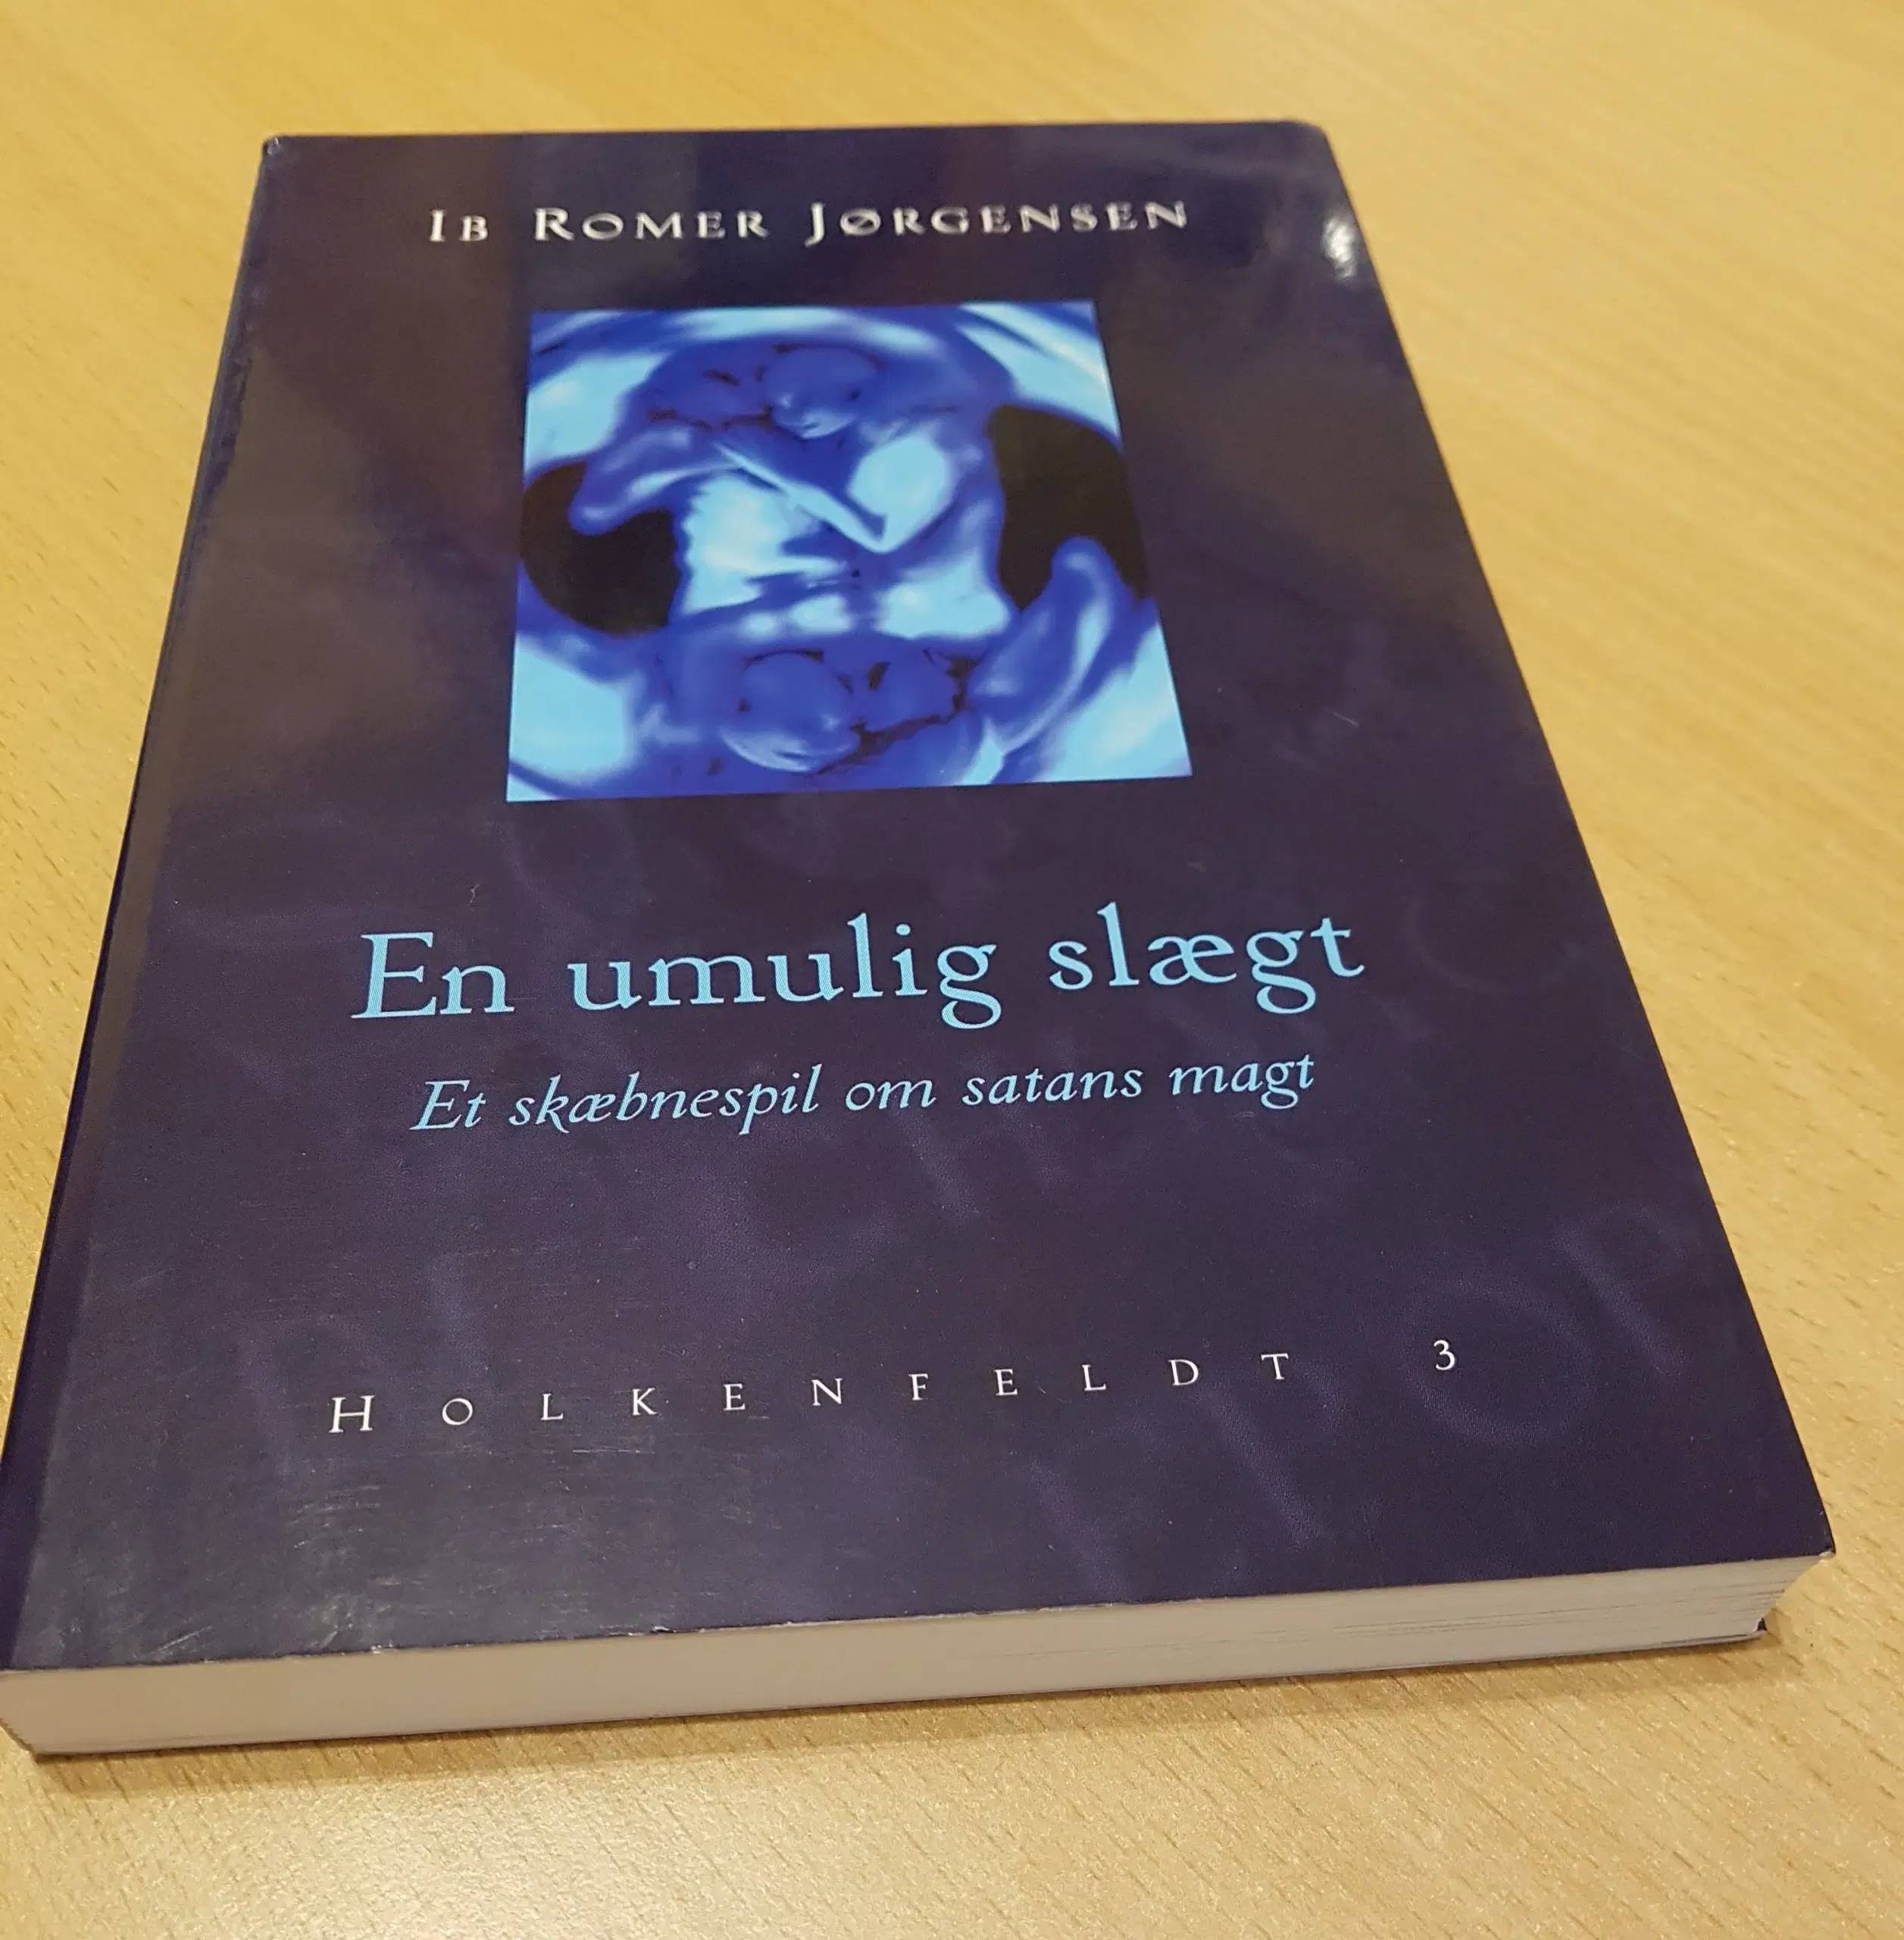 Ib Romer Jørgensen - En umulig slægt